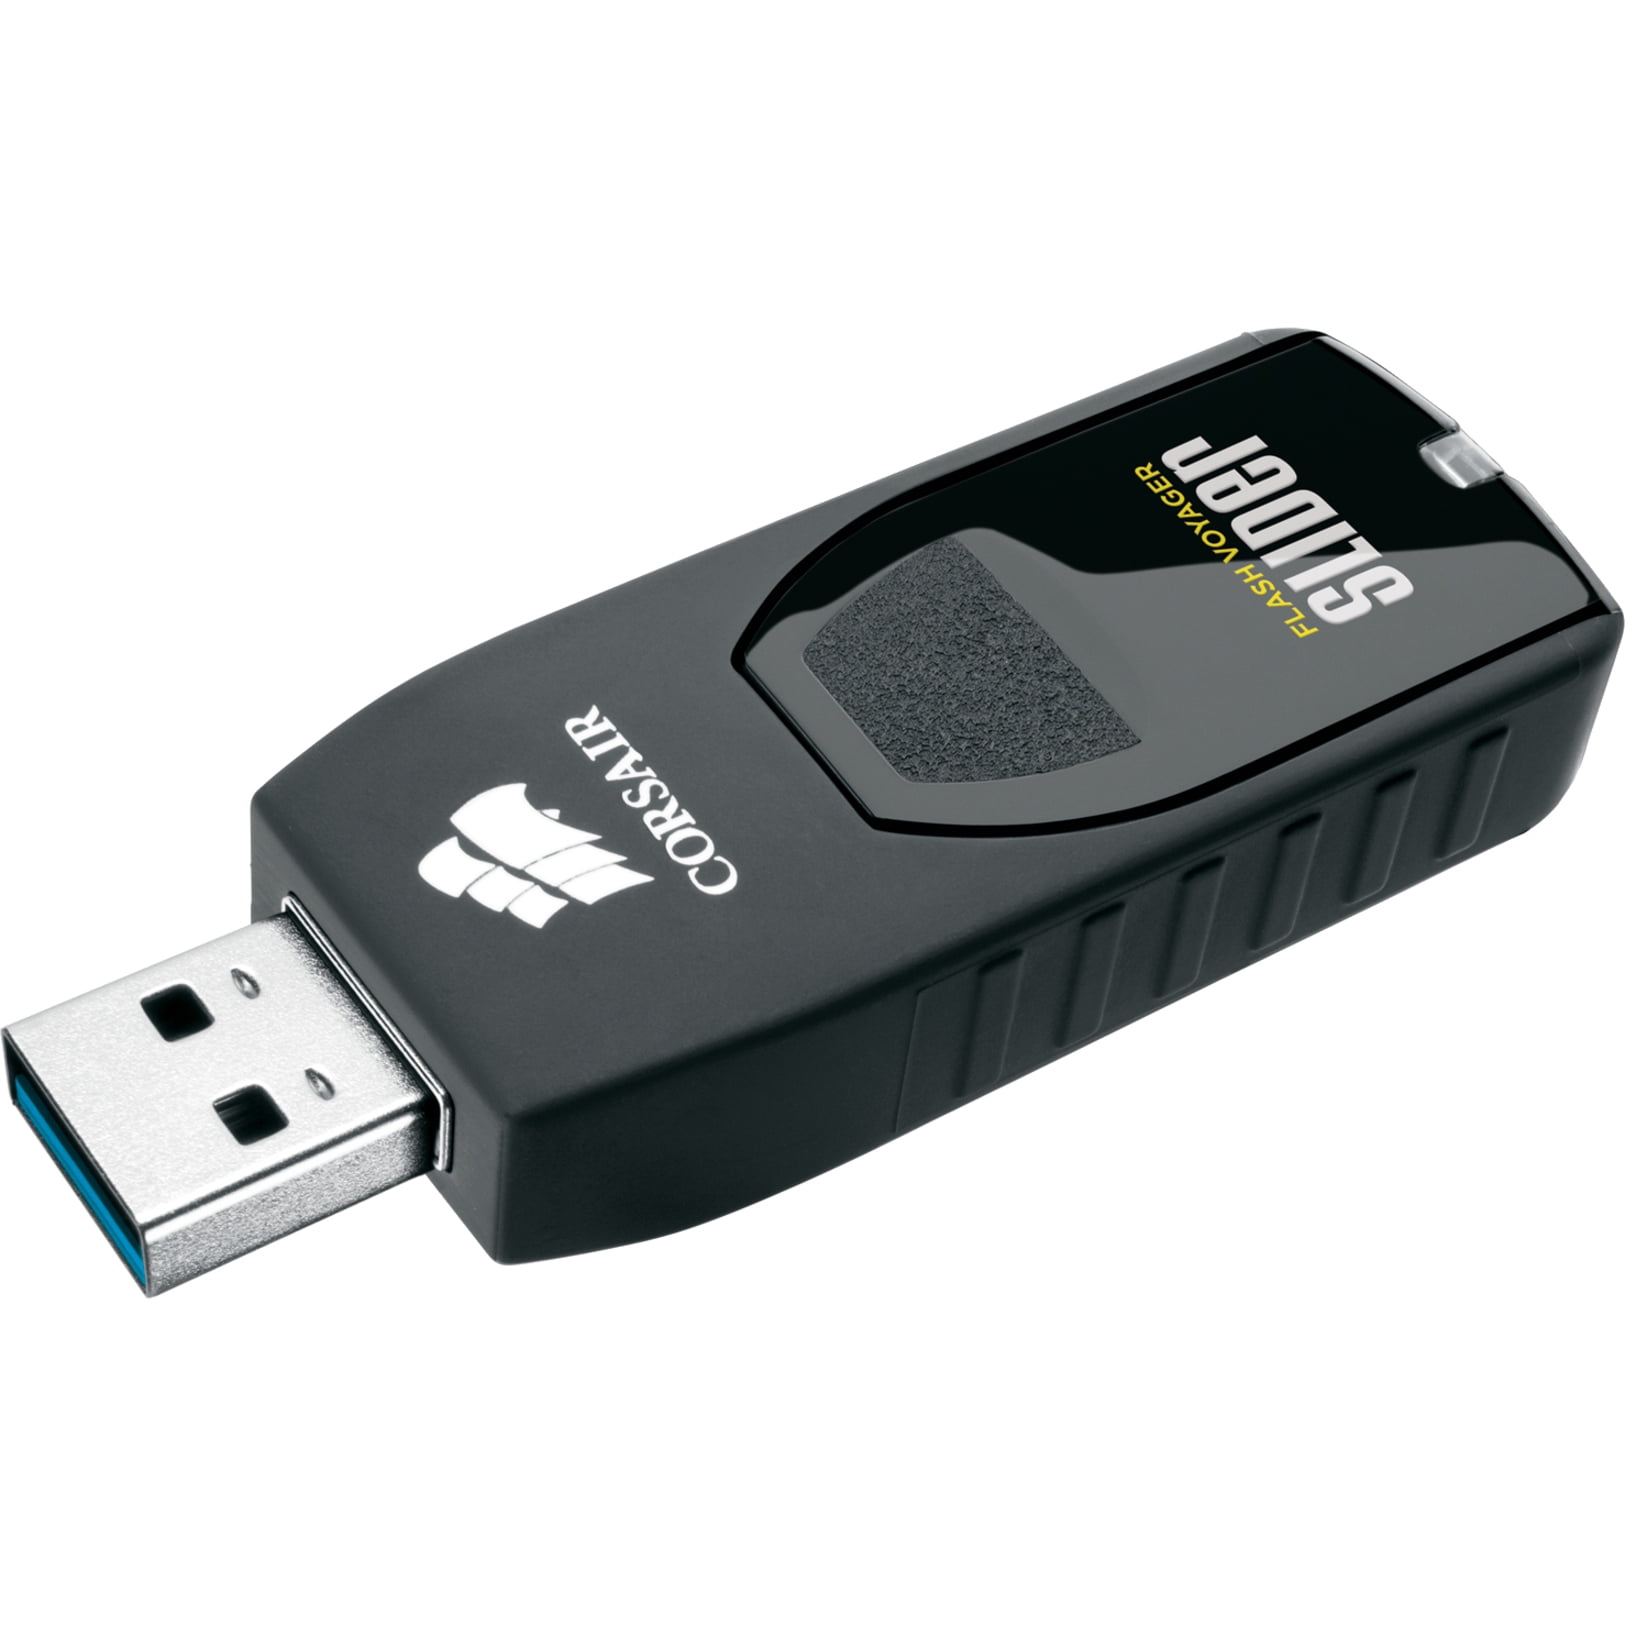 Slider USB 32GB USB Drive - Walmart.com